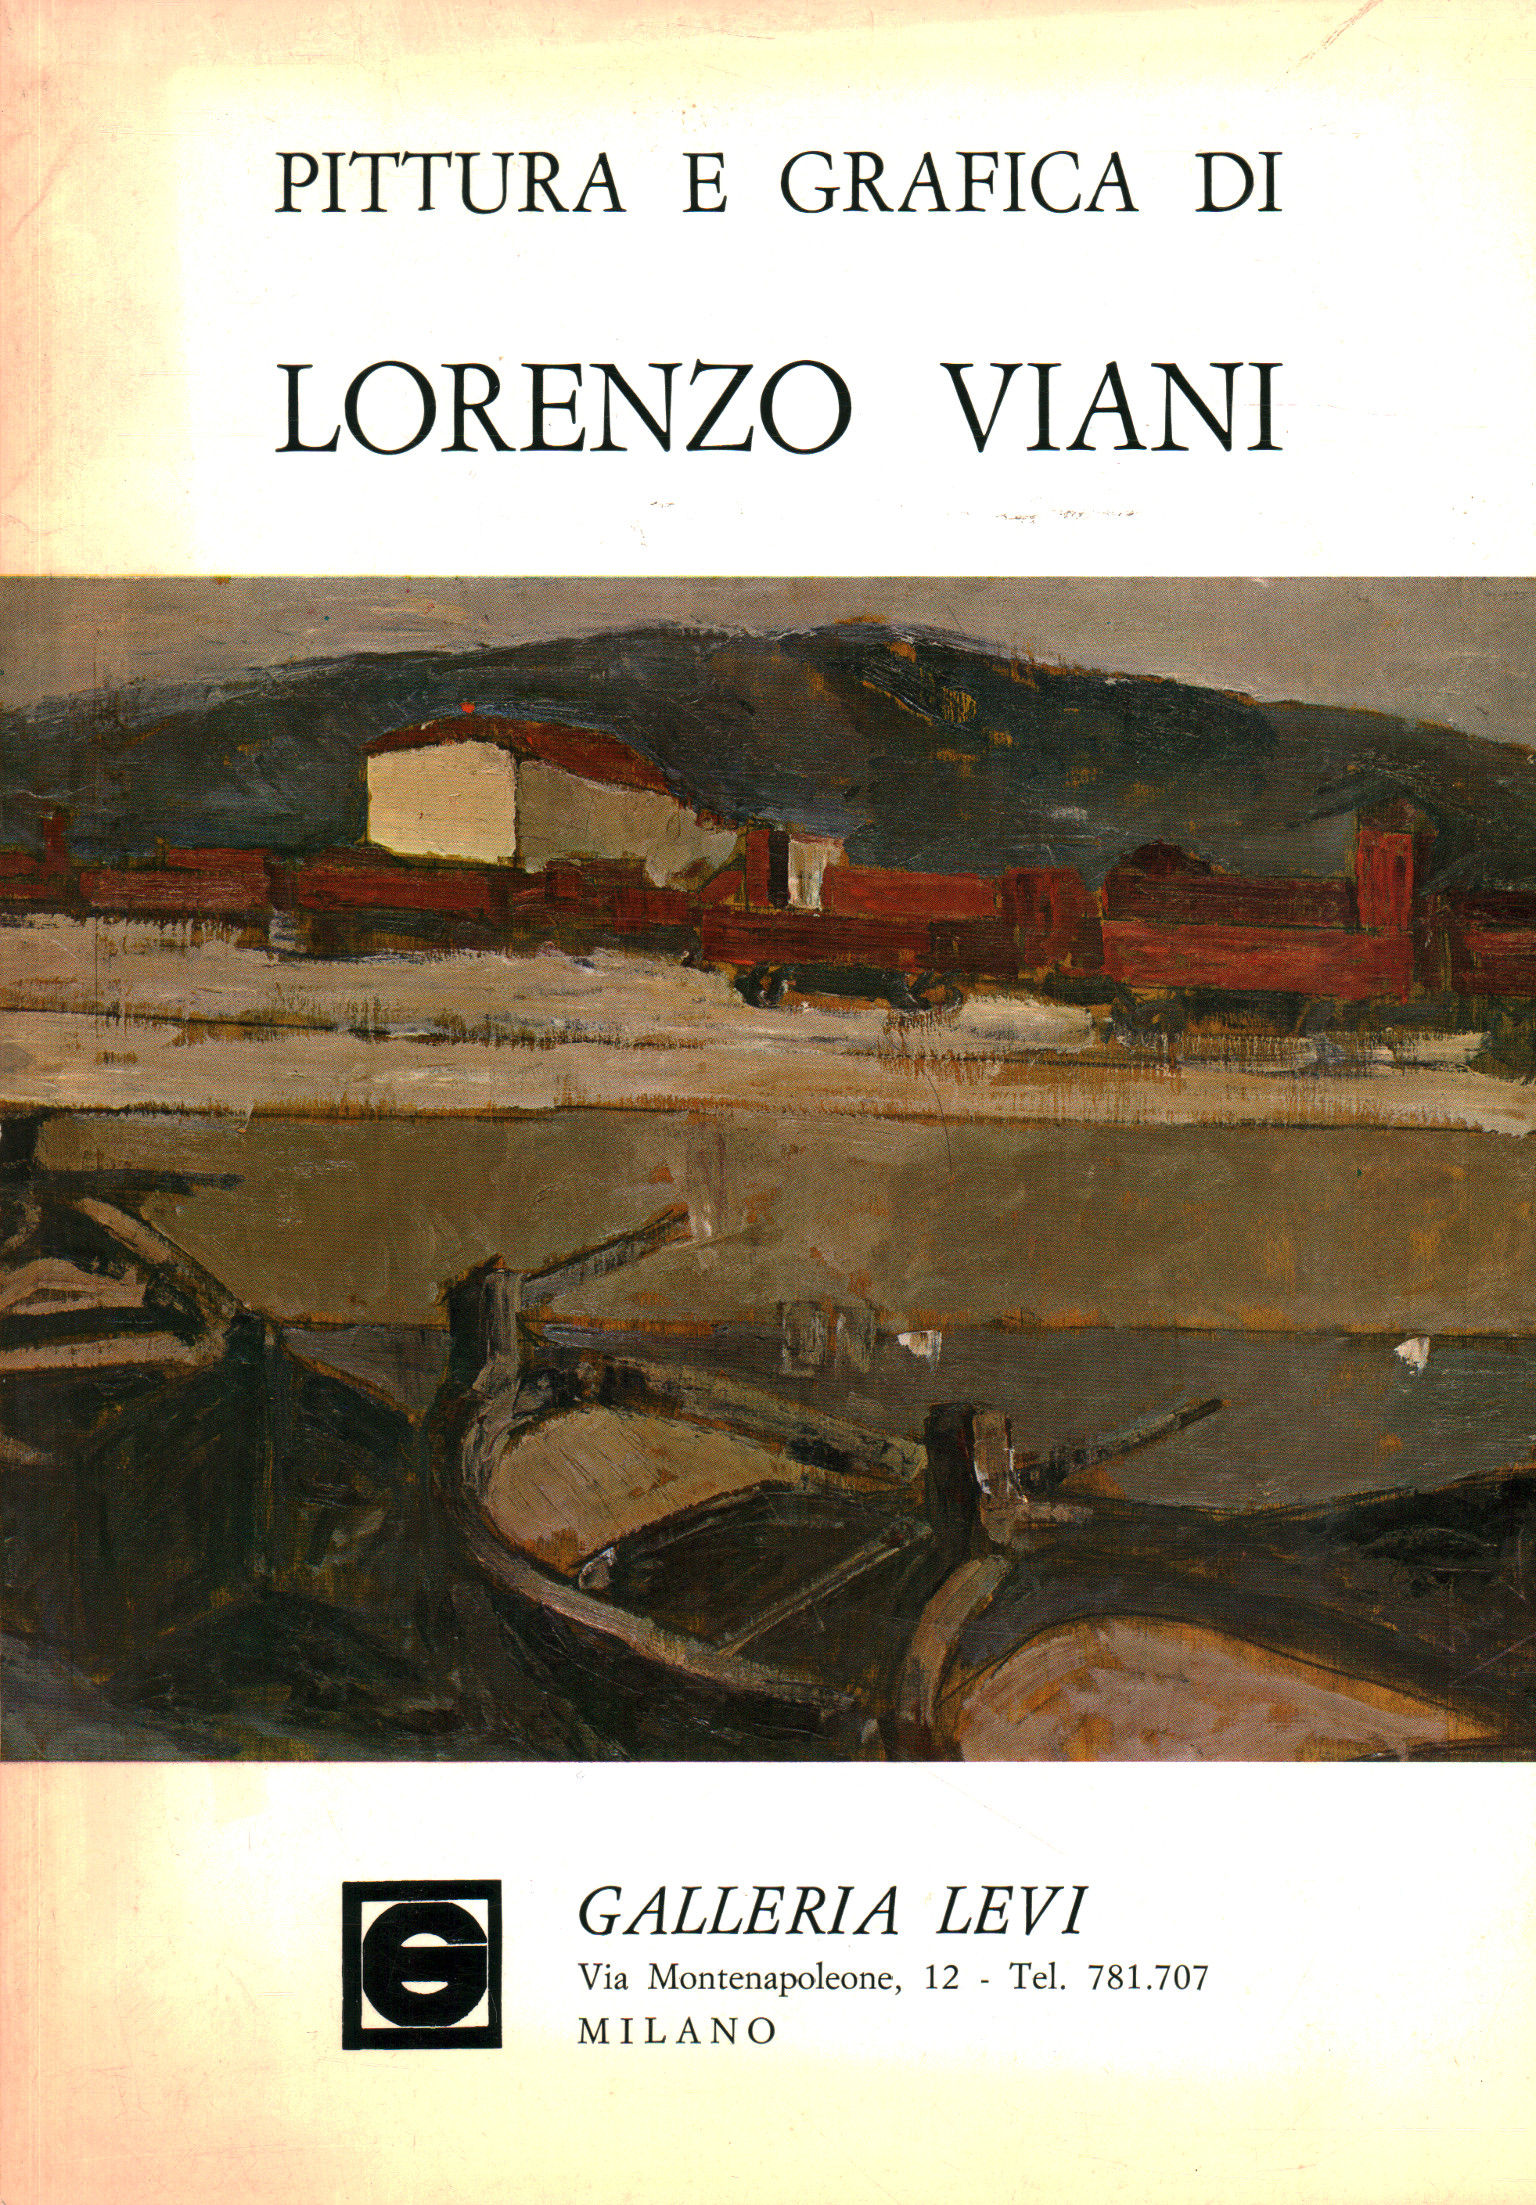 Painting and graphics by Lorenzo Viani, Fortunato Bellonzi